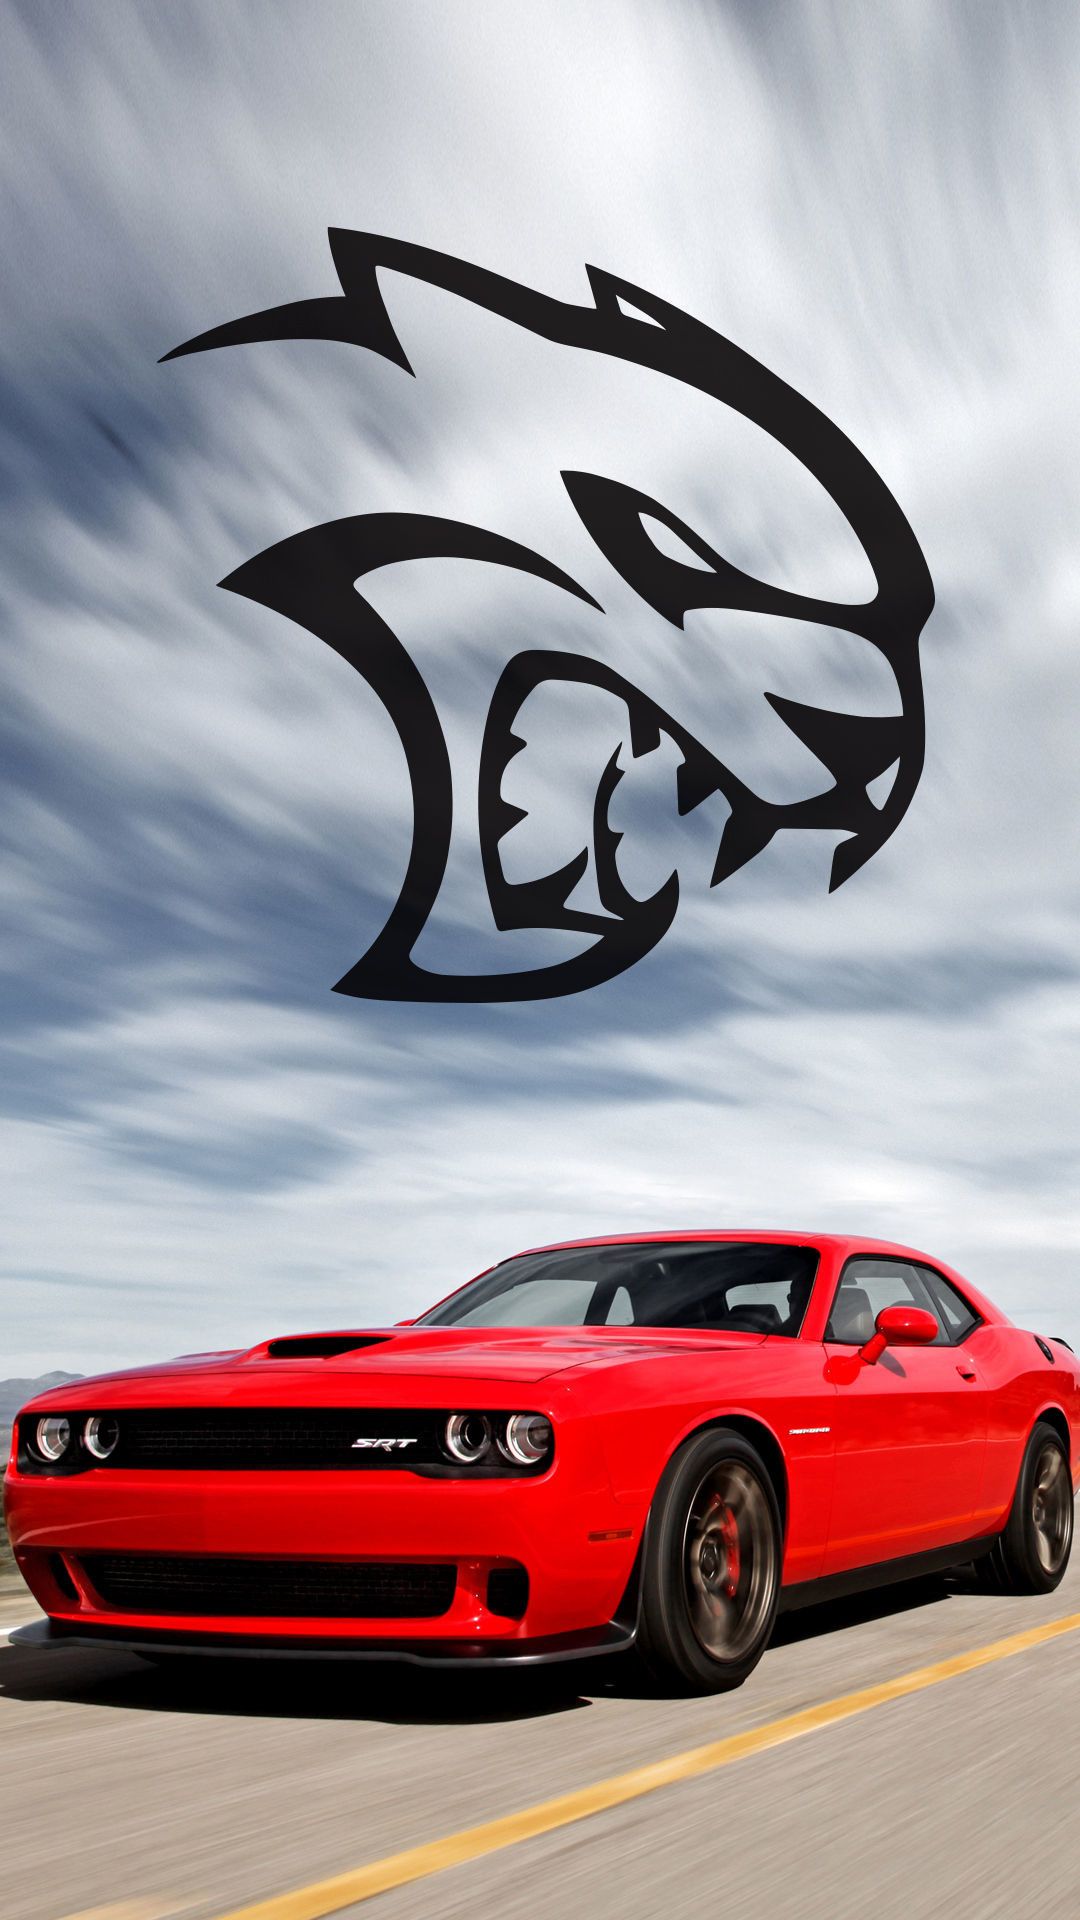 Hellcat Dodge Challenger iPhone Wallpaper